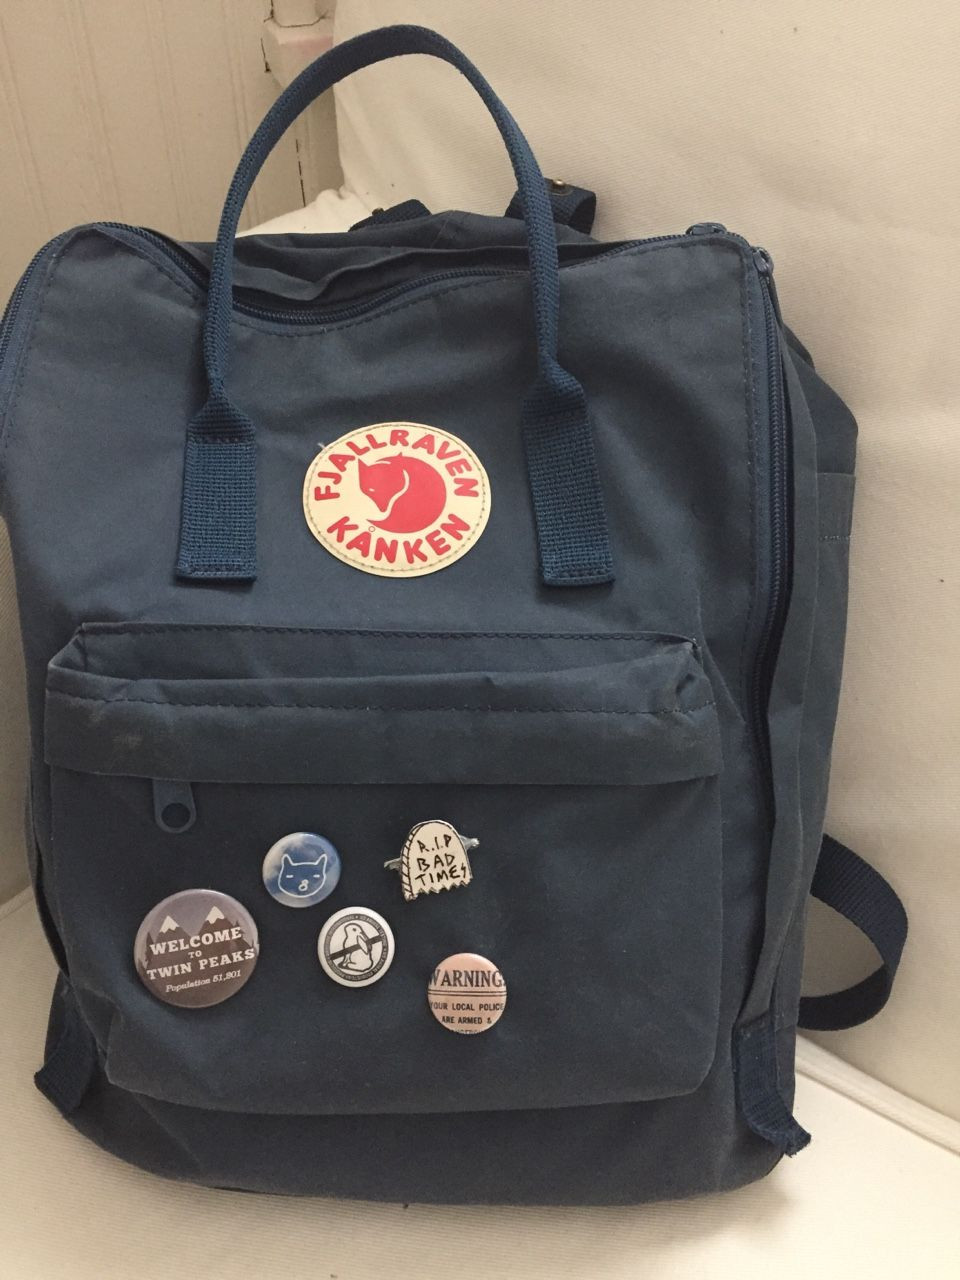 Pins On Backpack
 weekendsofvampires “floral prints & new pins